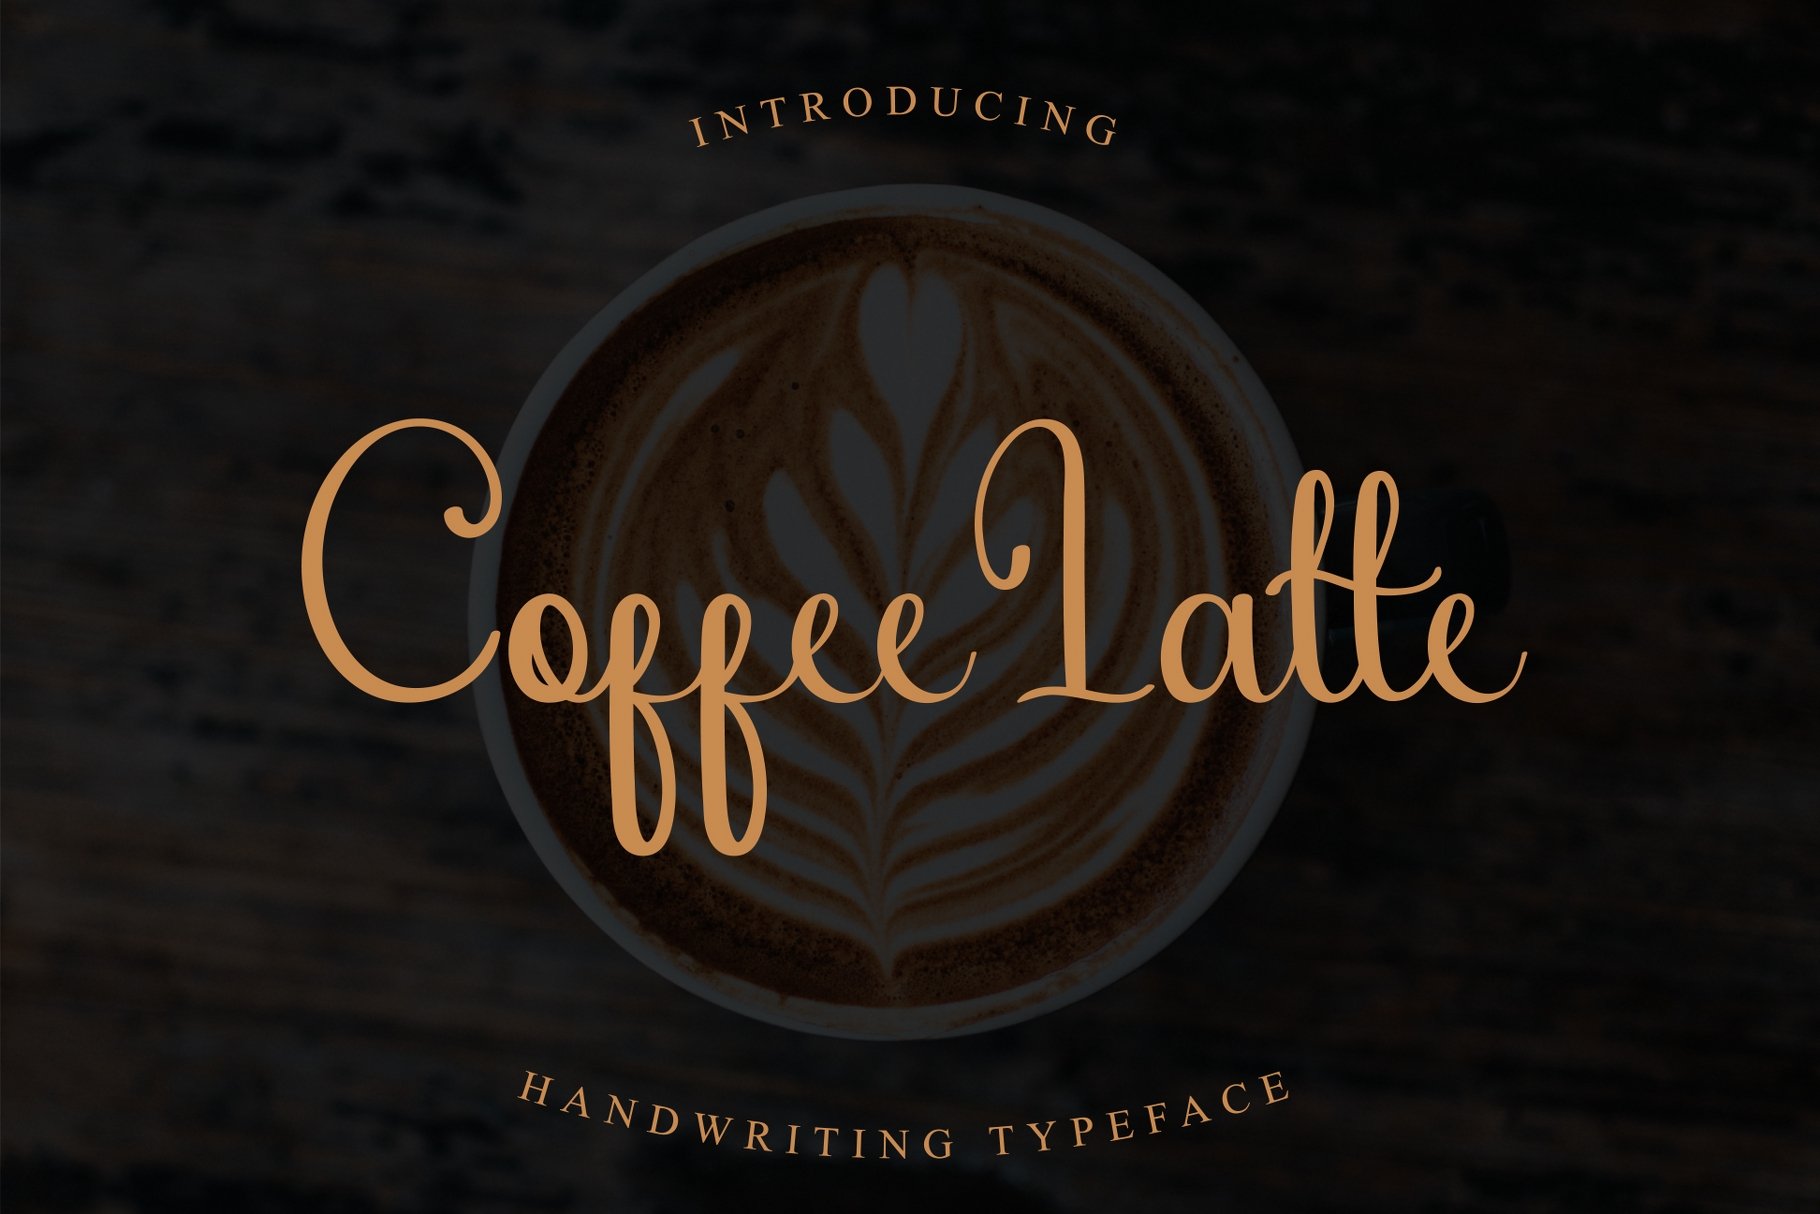 Coffee Latte Script cover image.